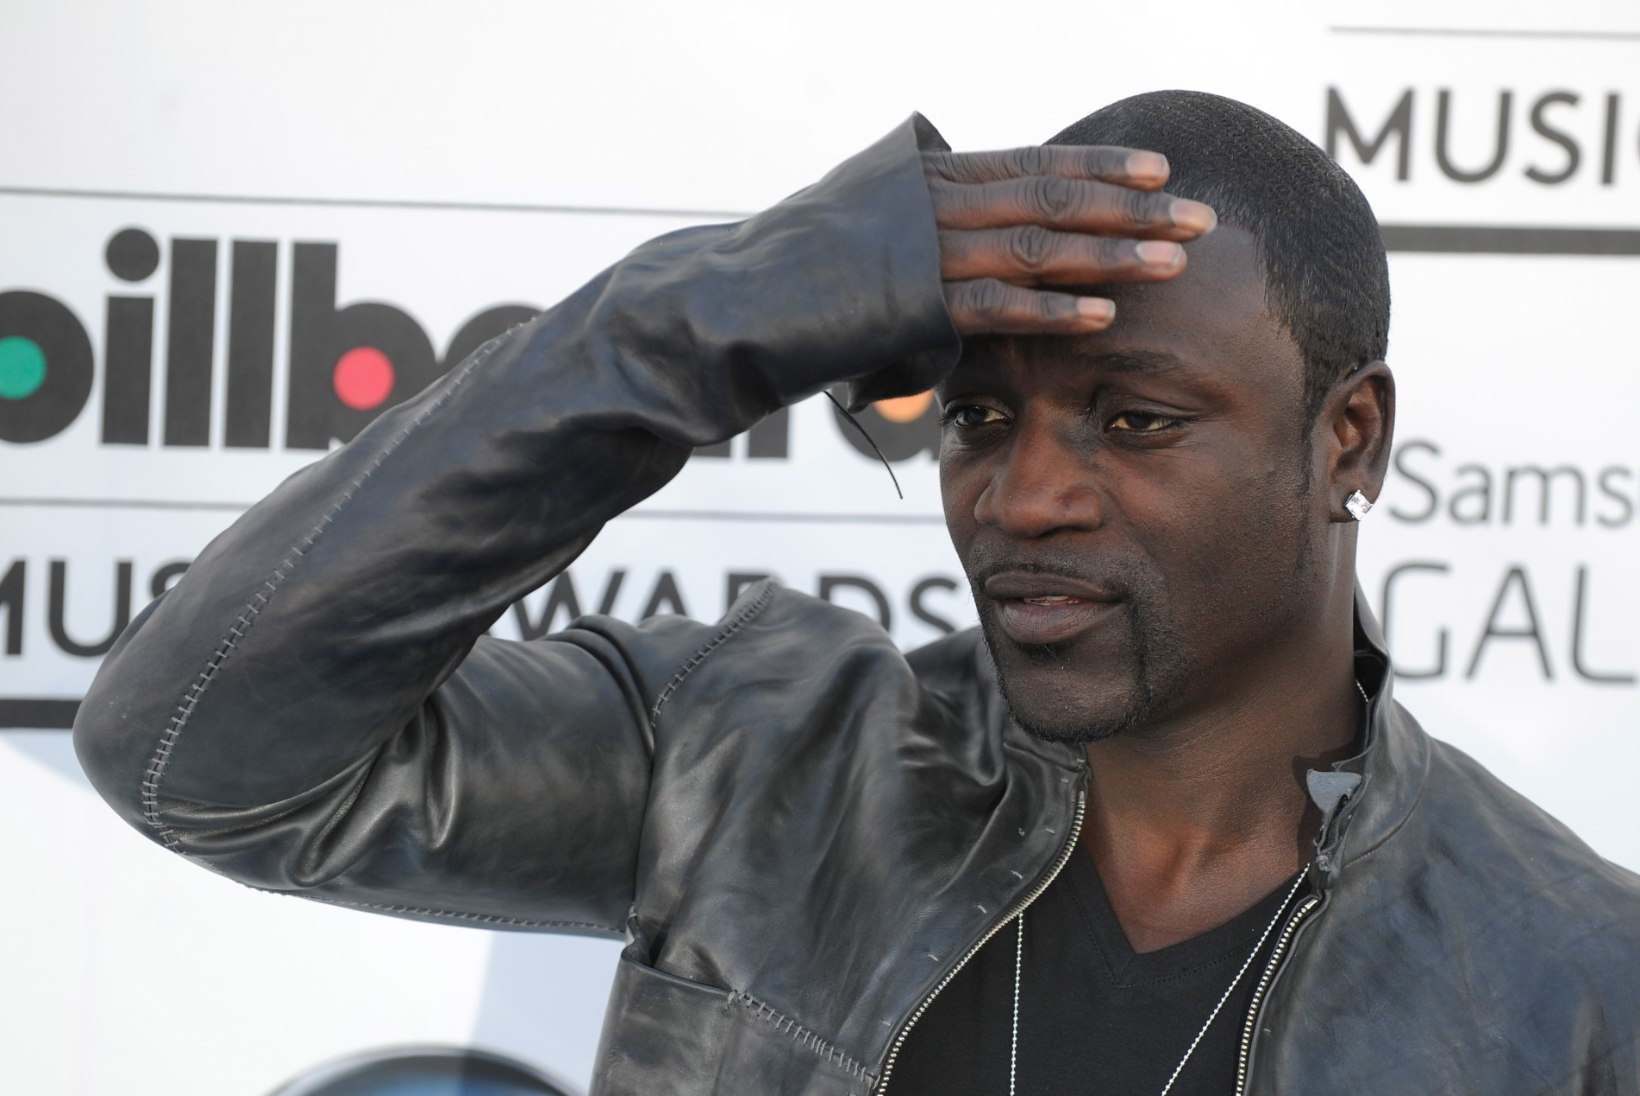 FOTOD: Akon lasi kalli häärberi maha lammutada ja stiilseks peopidamise kohaks muuta